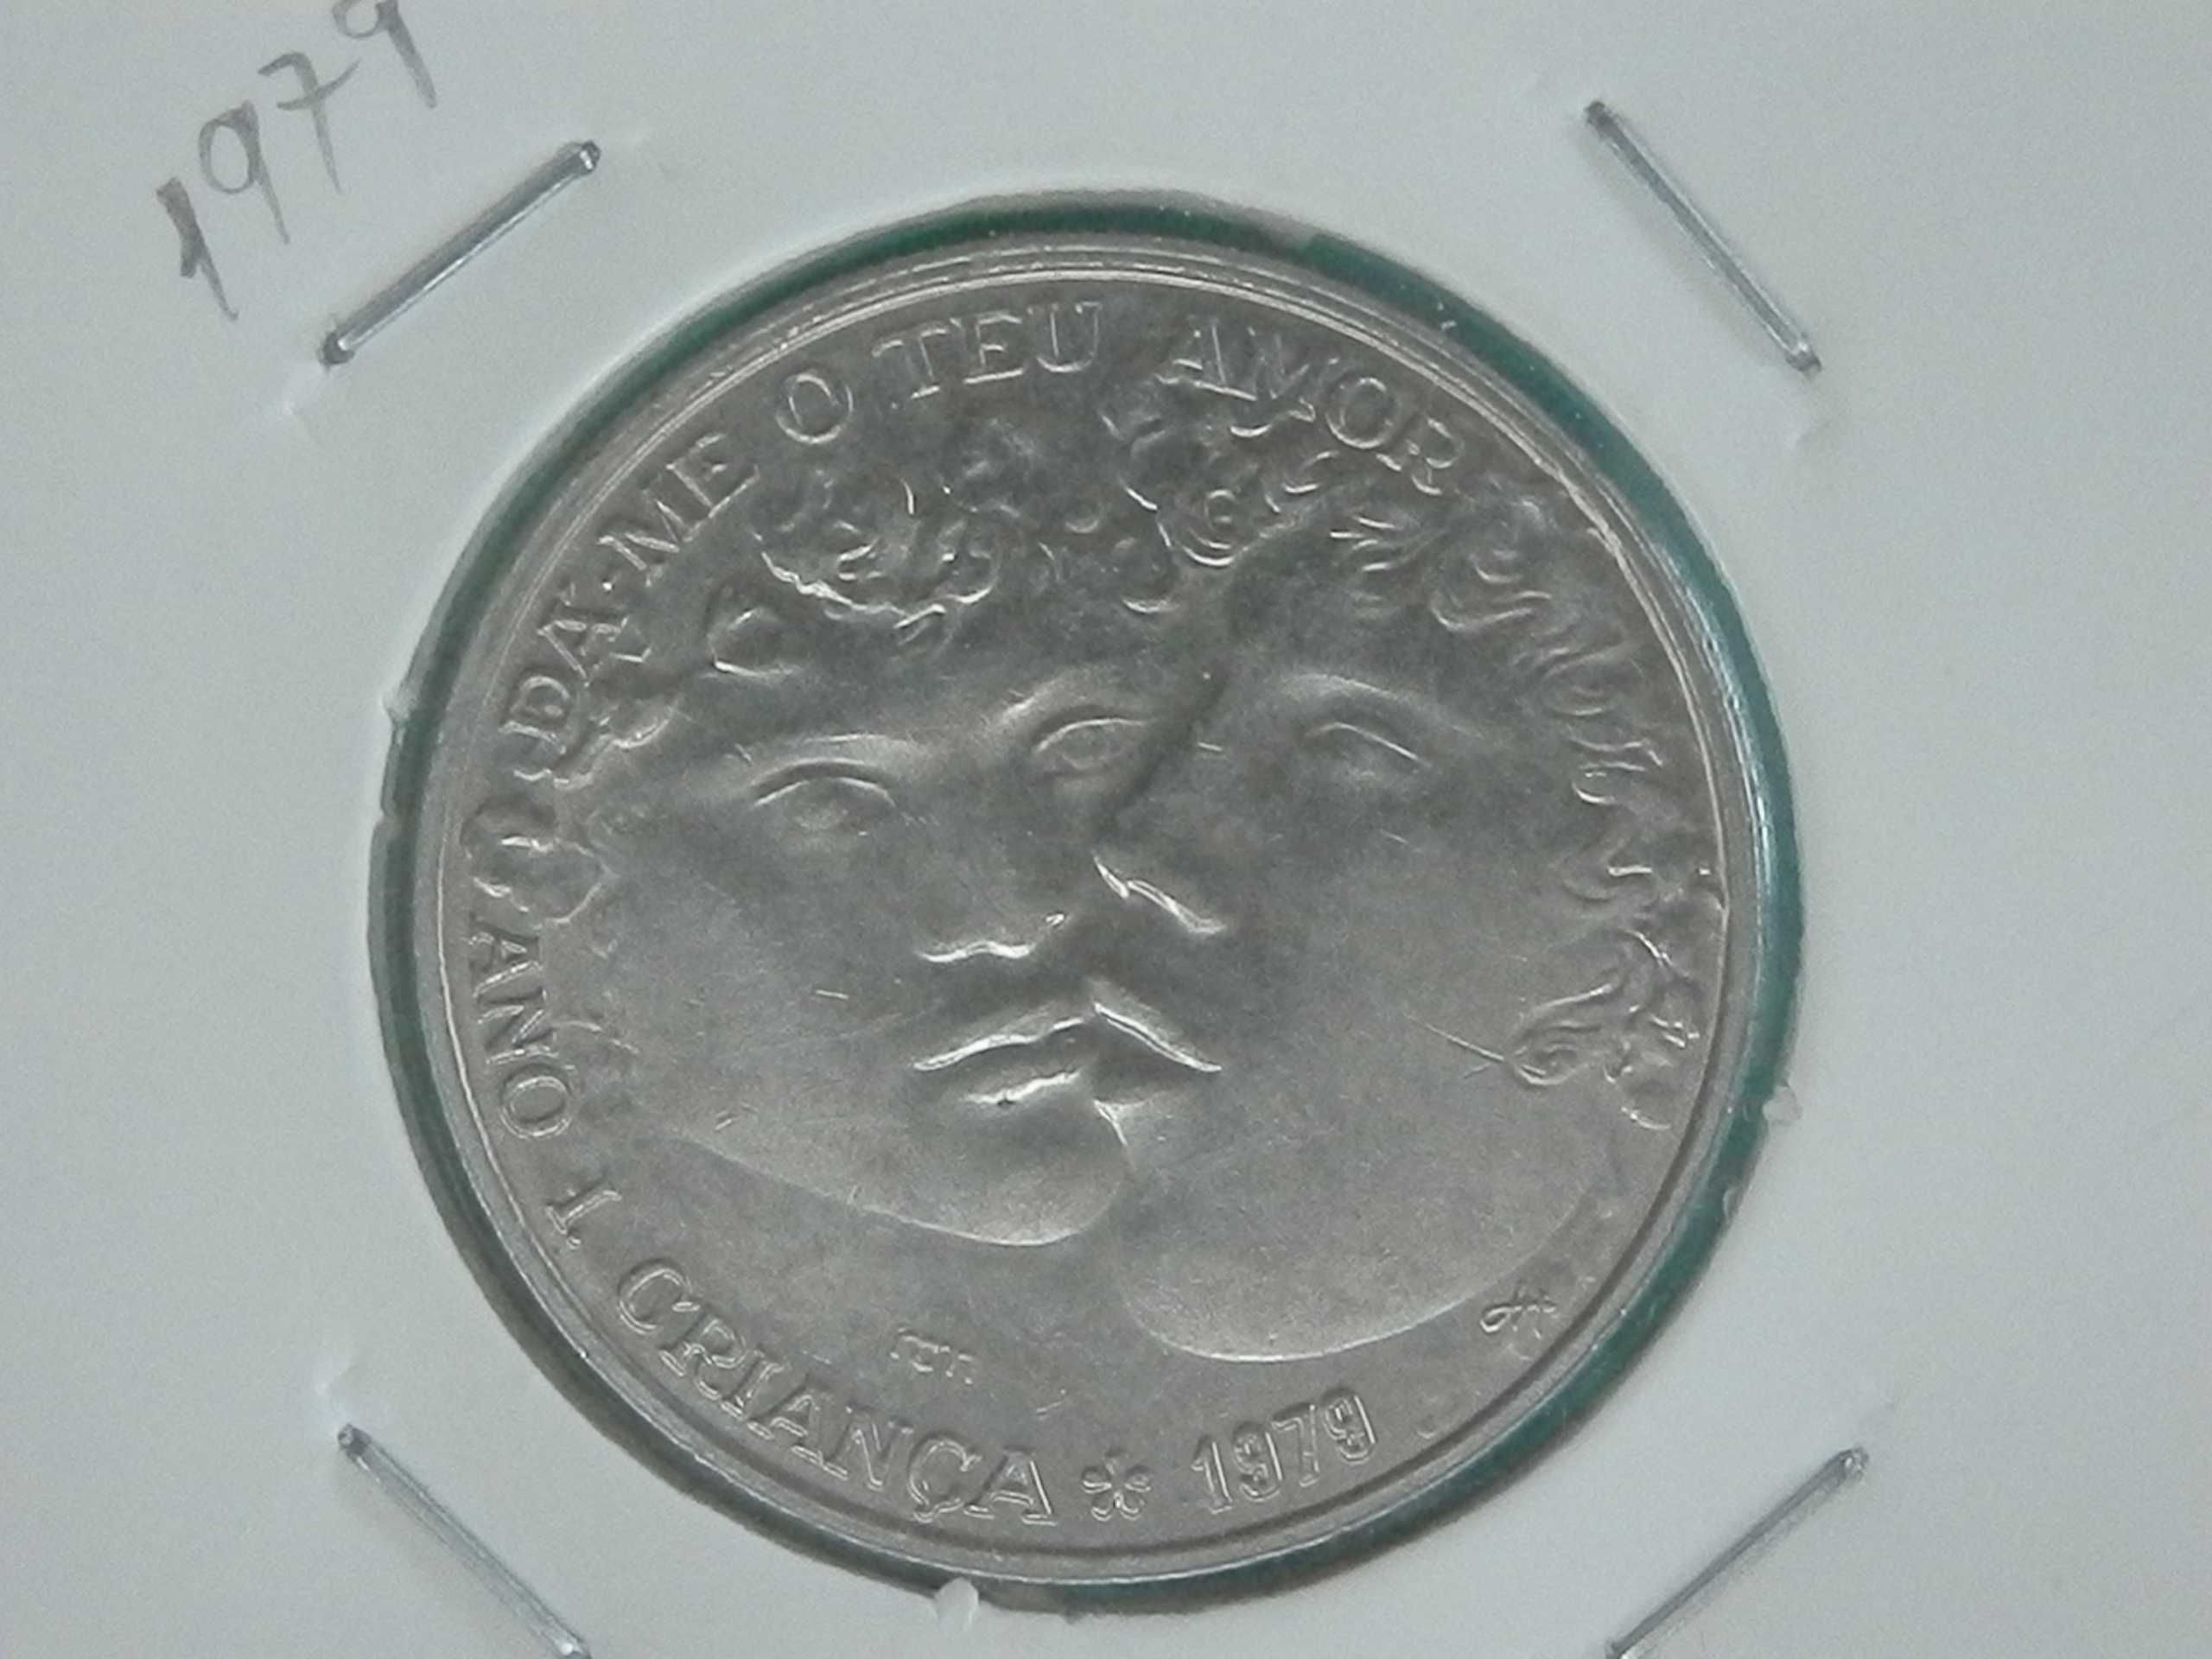 1020 - Comem: 25$00 escudos 1979 cuni A.I.Criança, por 0,50